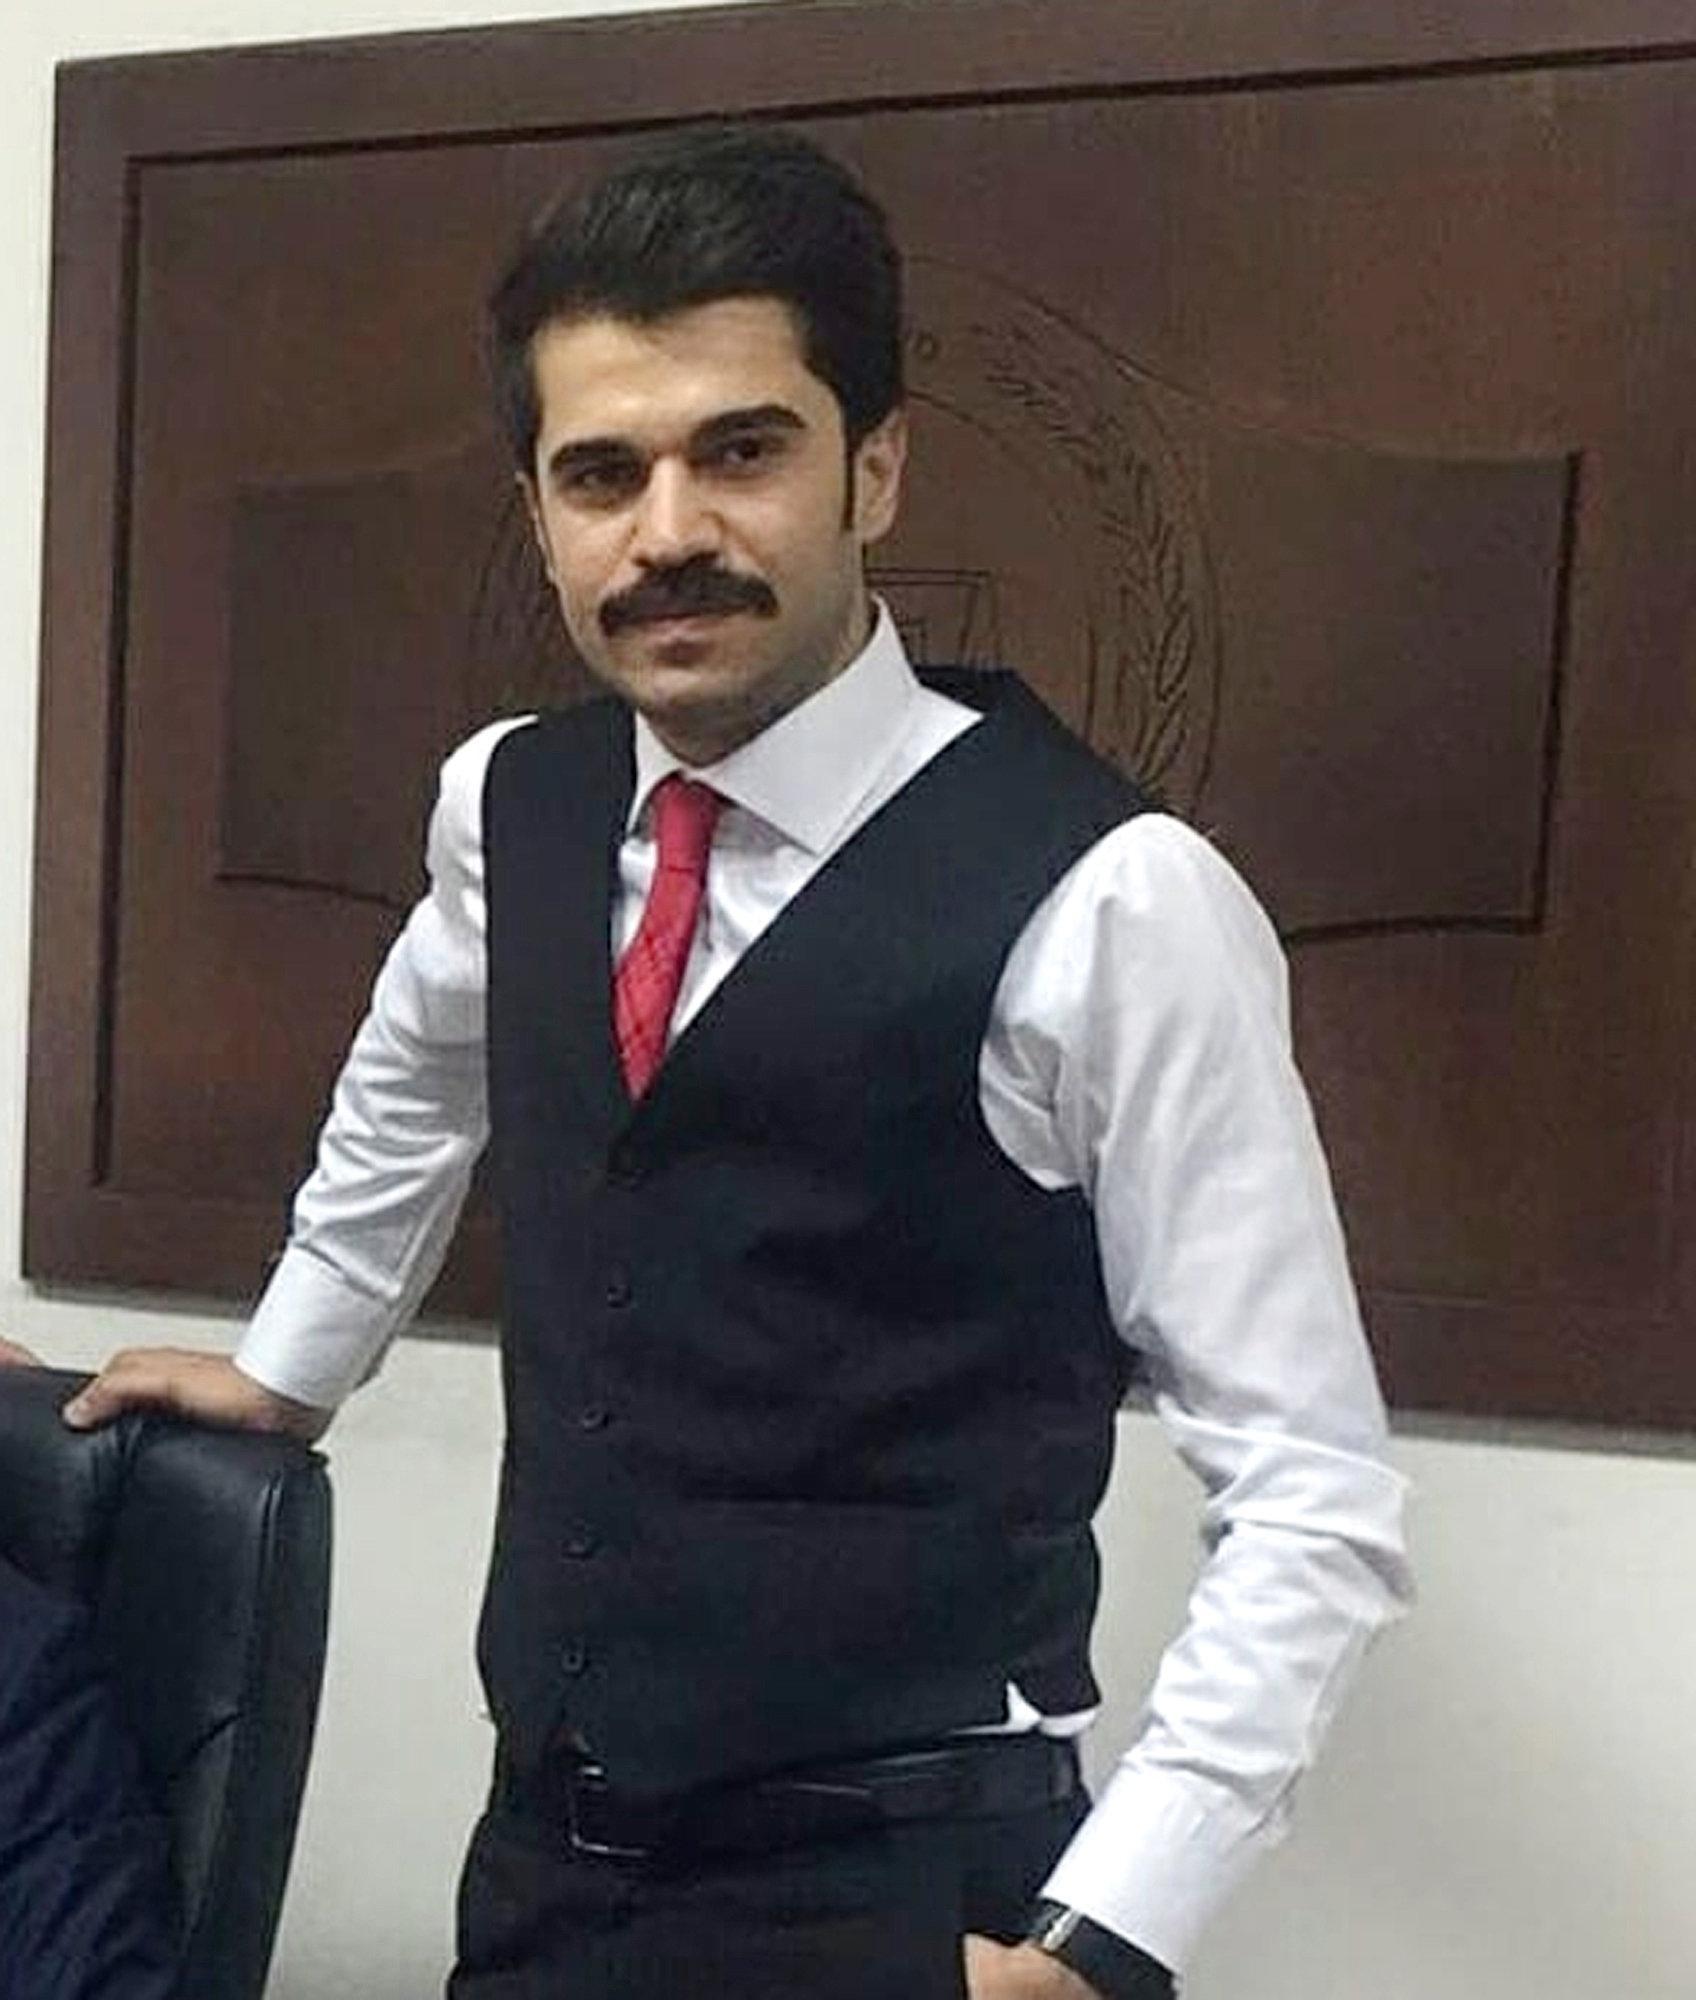 Savcıyı vuran polis: Kürtçe ağır küfür edince kendimi kaybettim